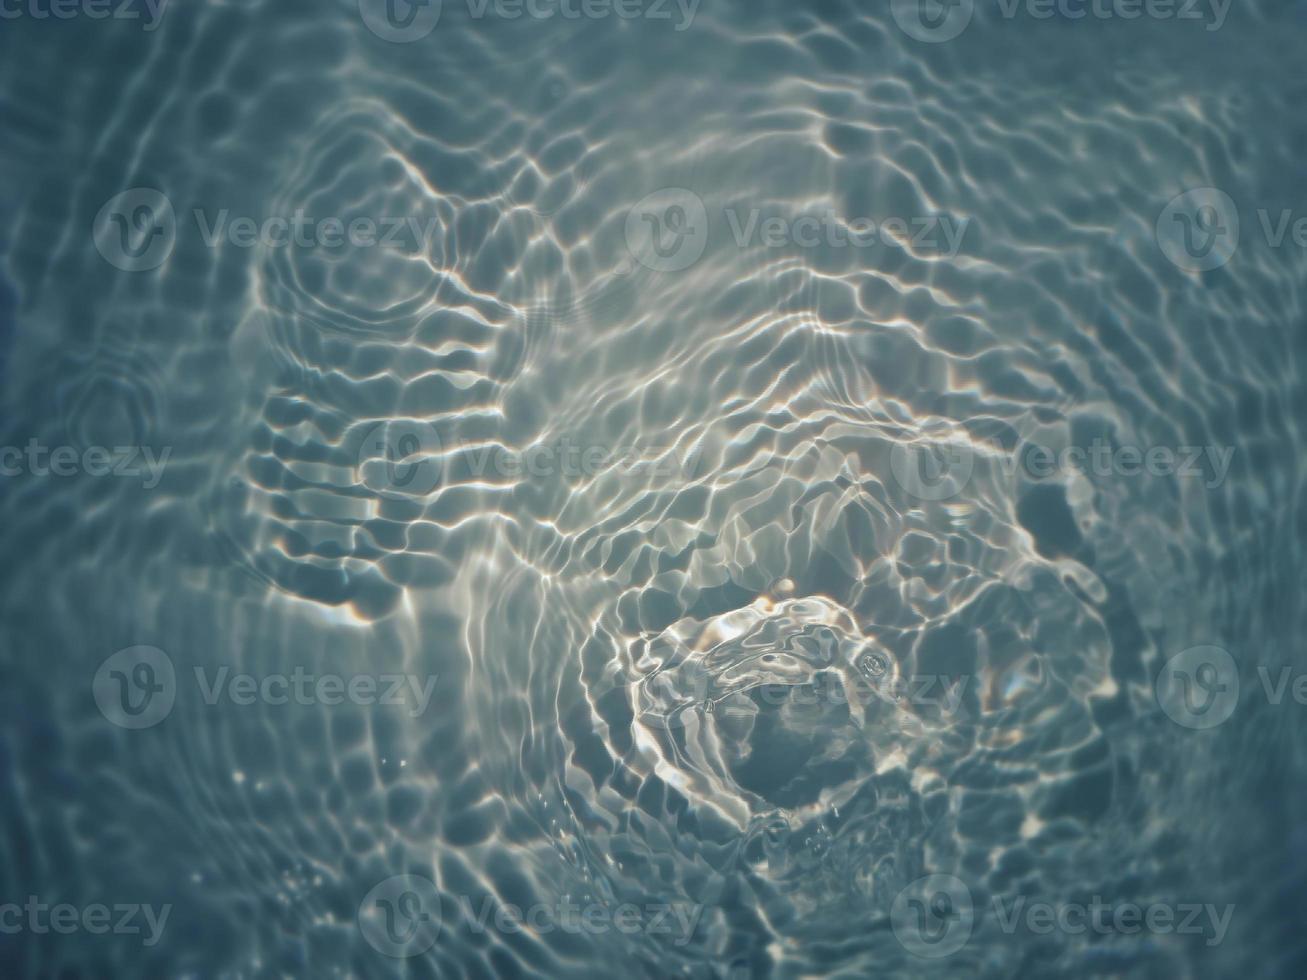 défocalisation floue transparente bleu clair texture de surface de l'eau calme avec des éclaboussures et des bulles. fond de nature abstraite à la mode. vagues d'eau au soleil avec espace de copie. aquarelle bleue brillante photo